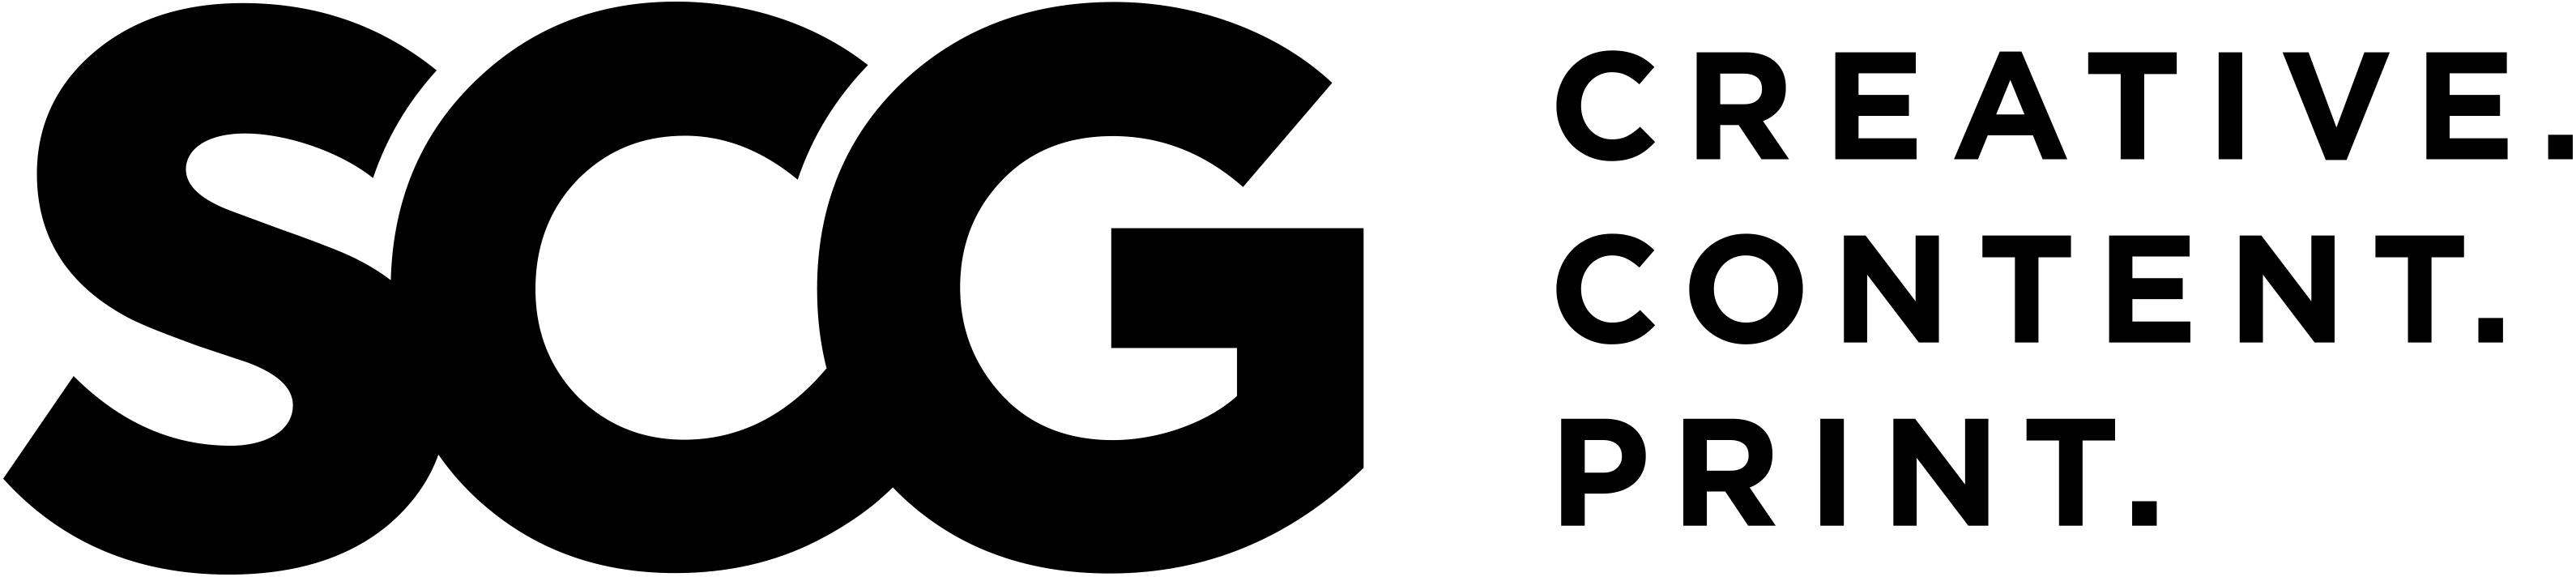 scg-logo